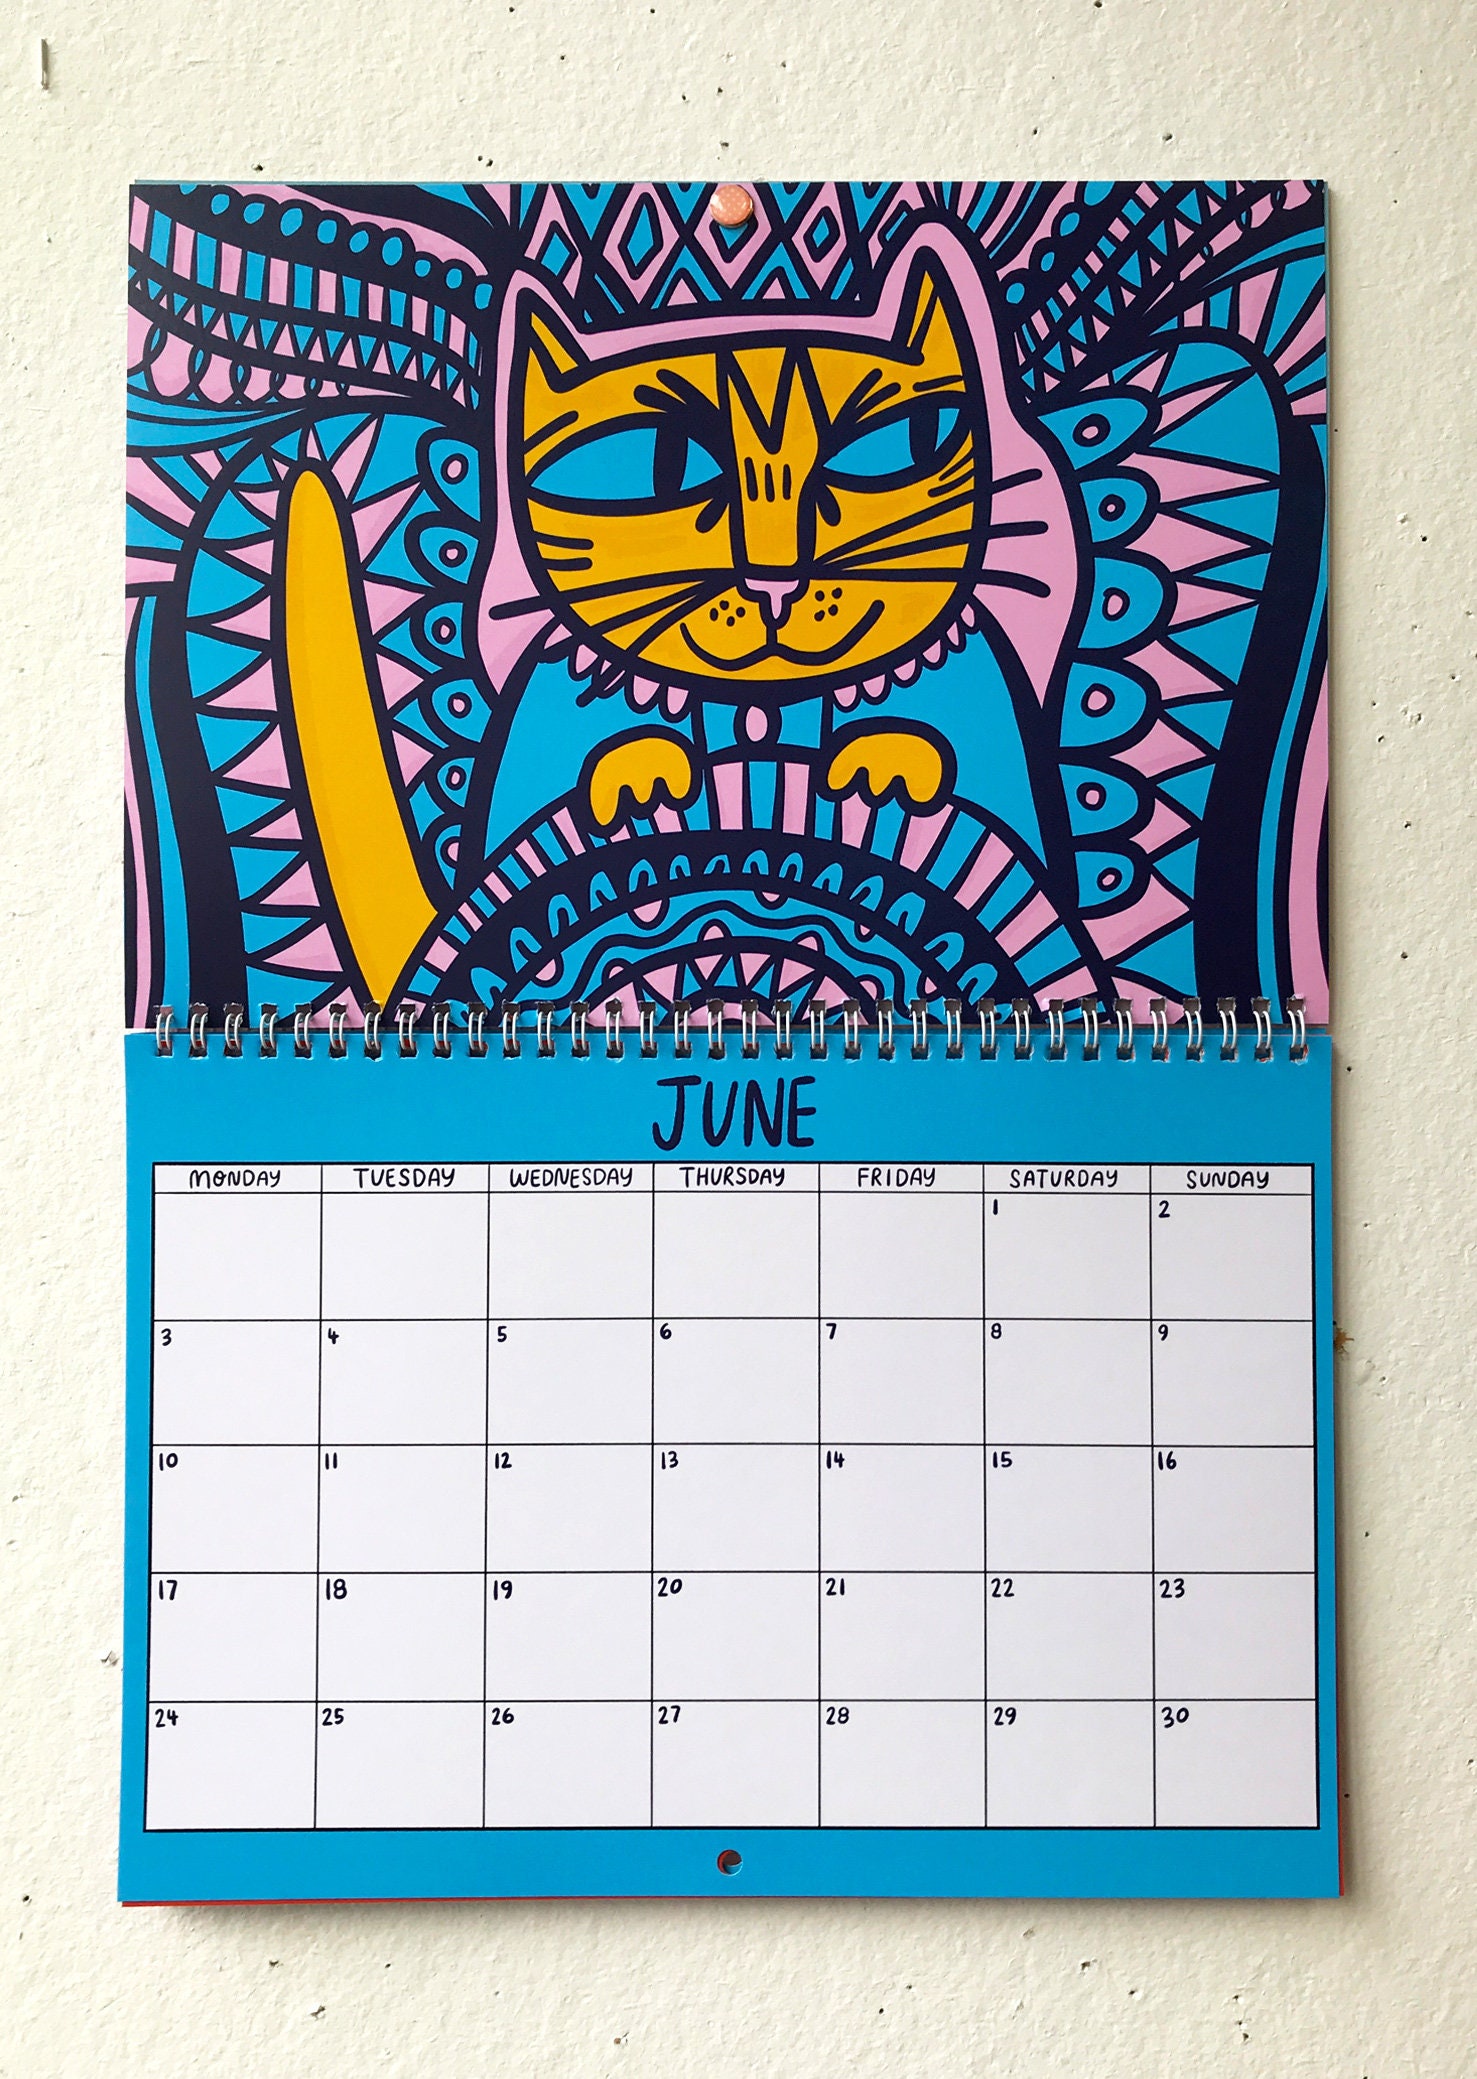 2024 Kitty Calendar 2024 Wall Calendar Cat Calendar 2024 Wall Planner 